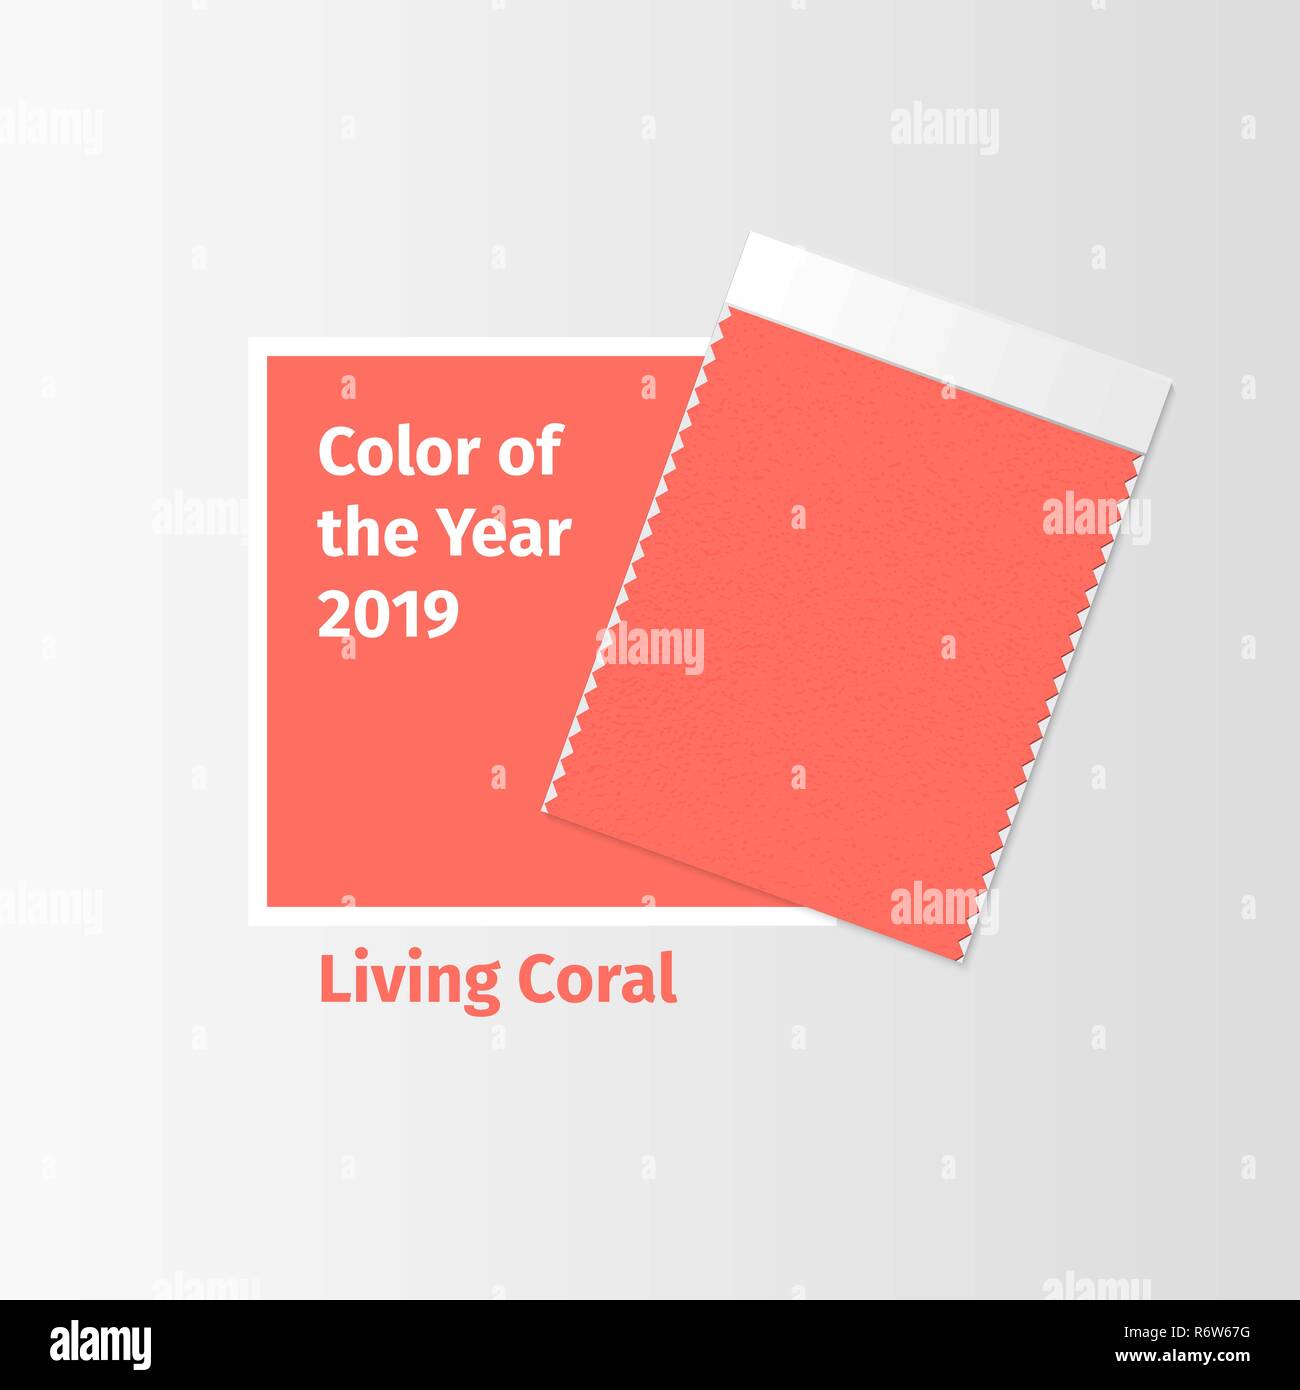 Campioni di tessuto tessile modello swatch per interior design mood board con coralli viventi 2019 colore dell'anno. Alla moda di tavolozza di colori, rosso pezza di tessuto. Illustrazione Vettoriale per i post del blog Illustrazione Vettoriale